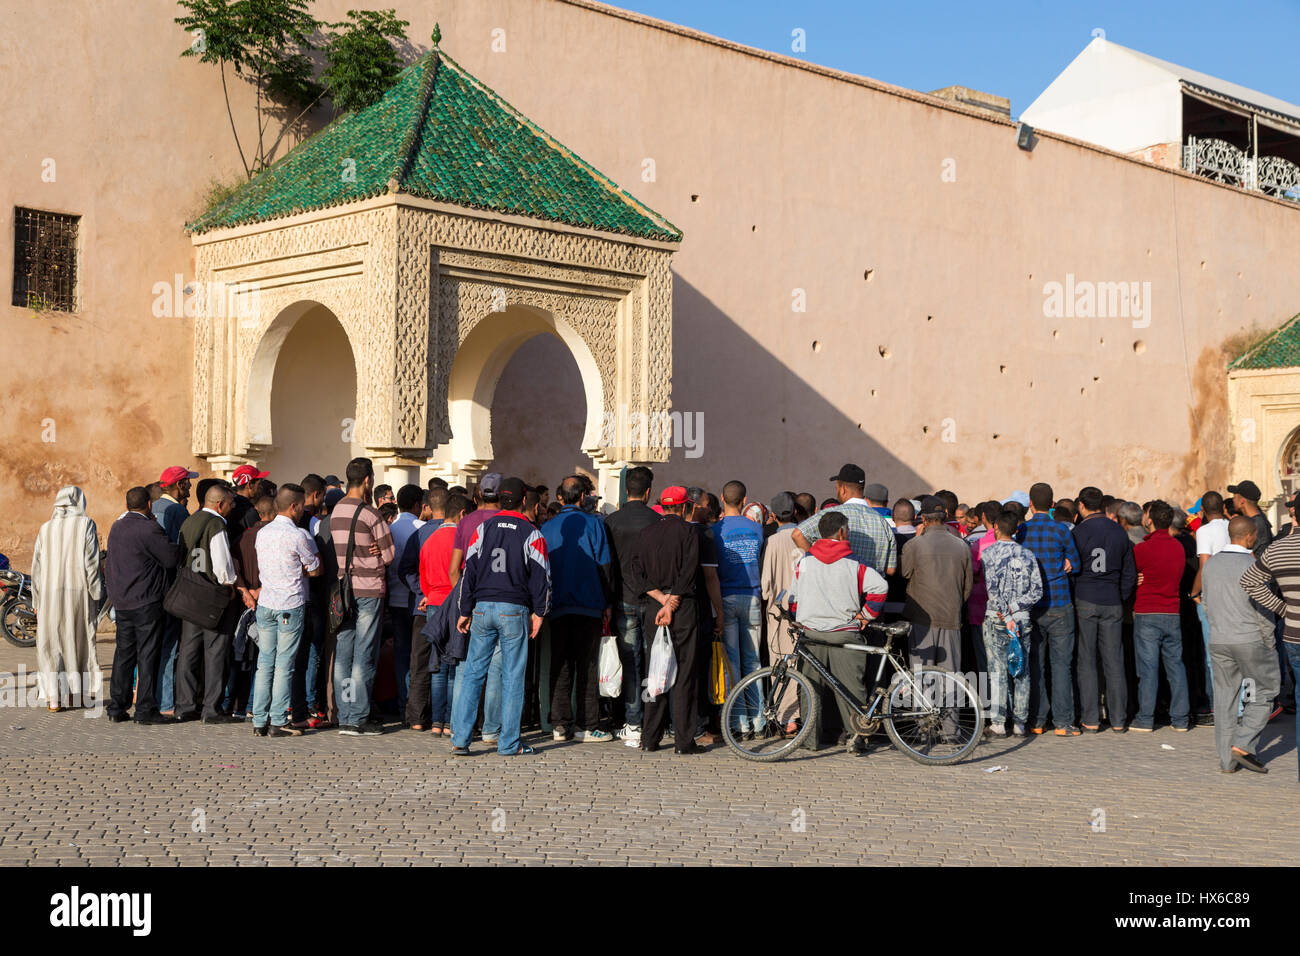 Meknes, Marruecos. Una multitud de hombres escuchando un narrador en el lugar Hedime. La mayoría de los hombres están en la zona occidental, la ropa europea. Foto de stock